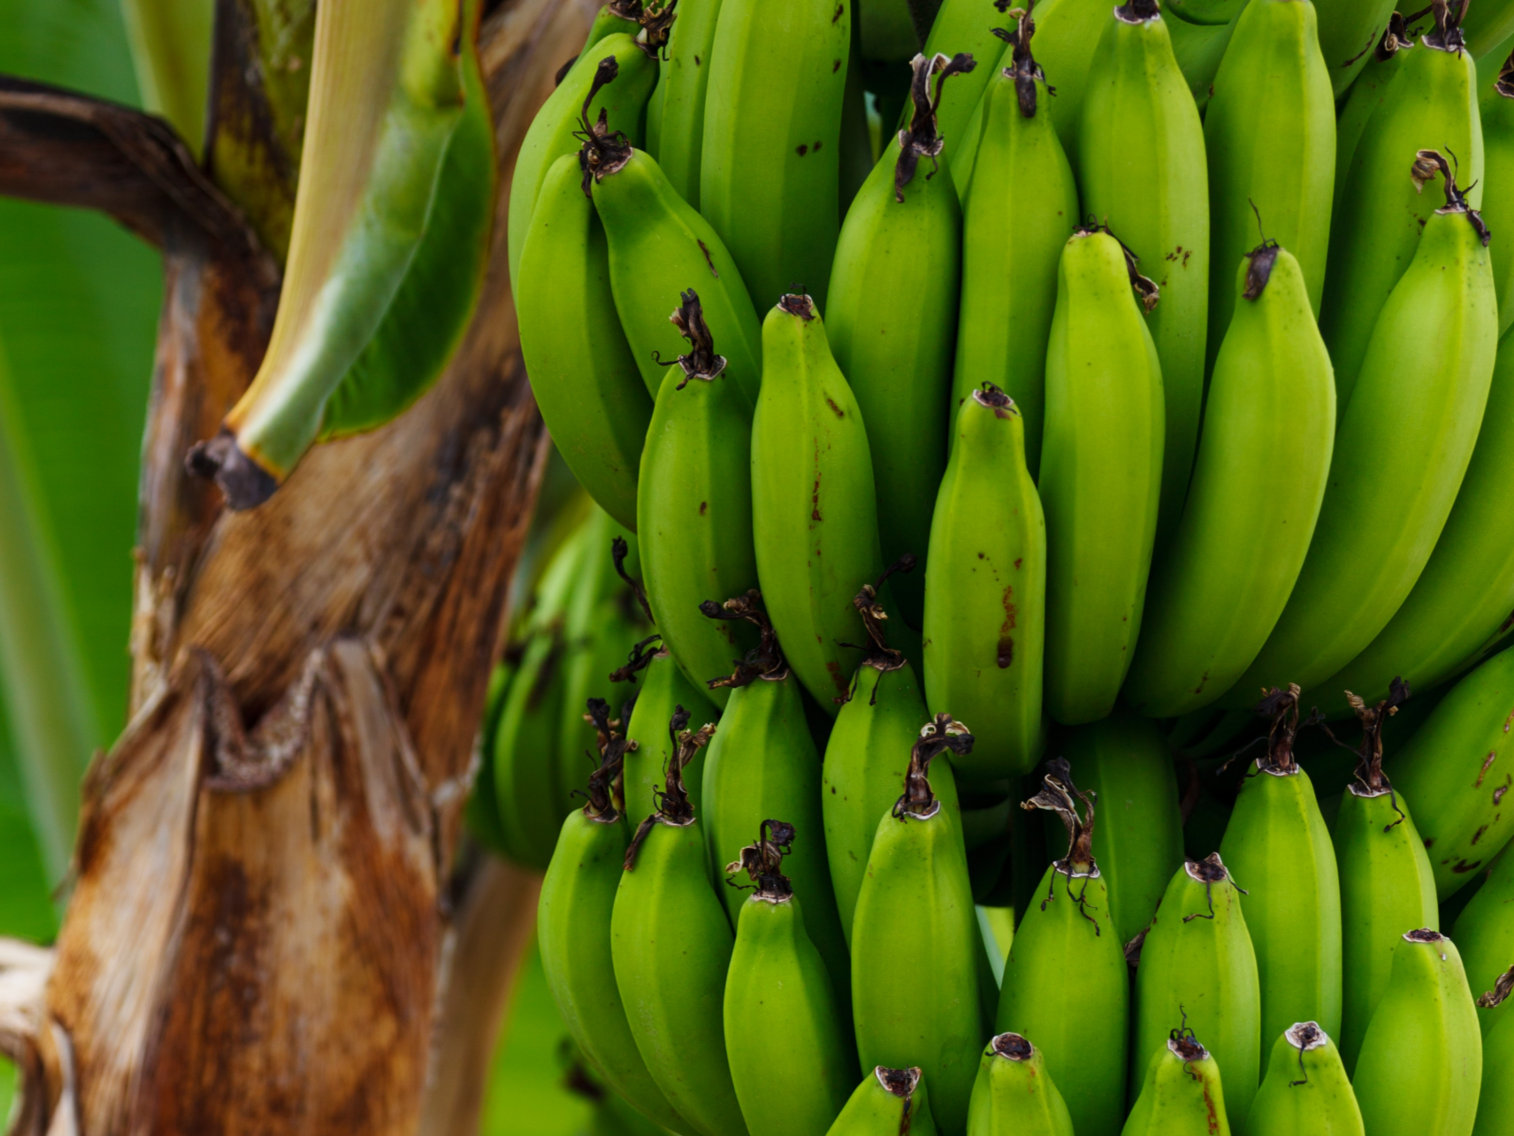 Quelle est la durée de conservation des bananes plantains ? 